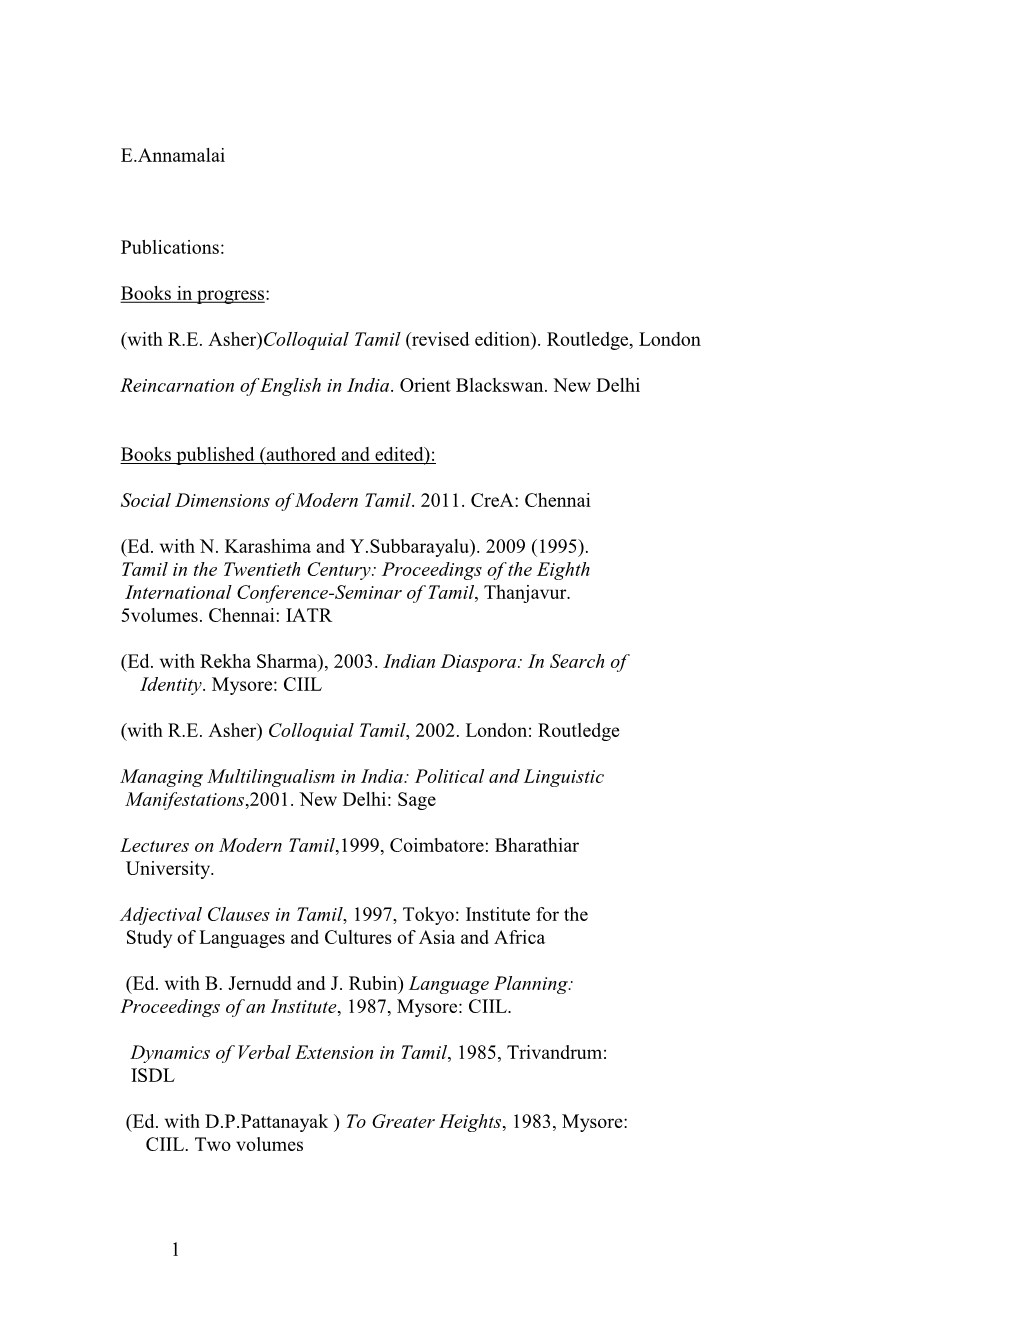 1 E.Annamalai Publications: Books in Progress: (With R.E. Asher